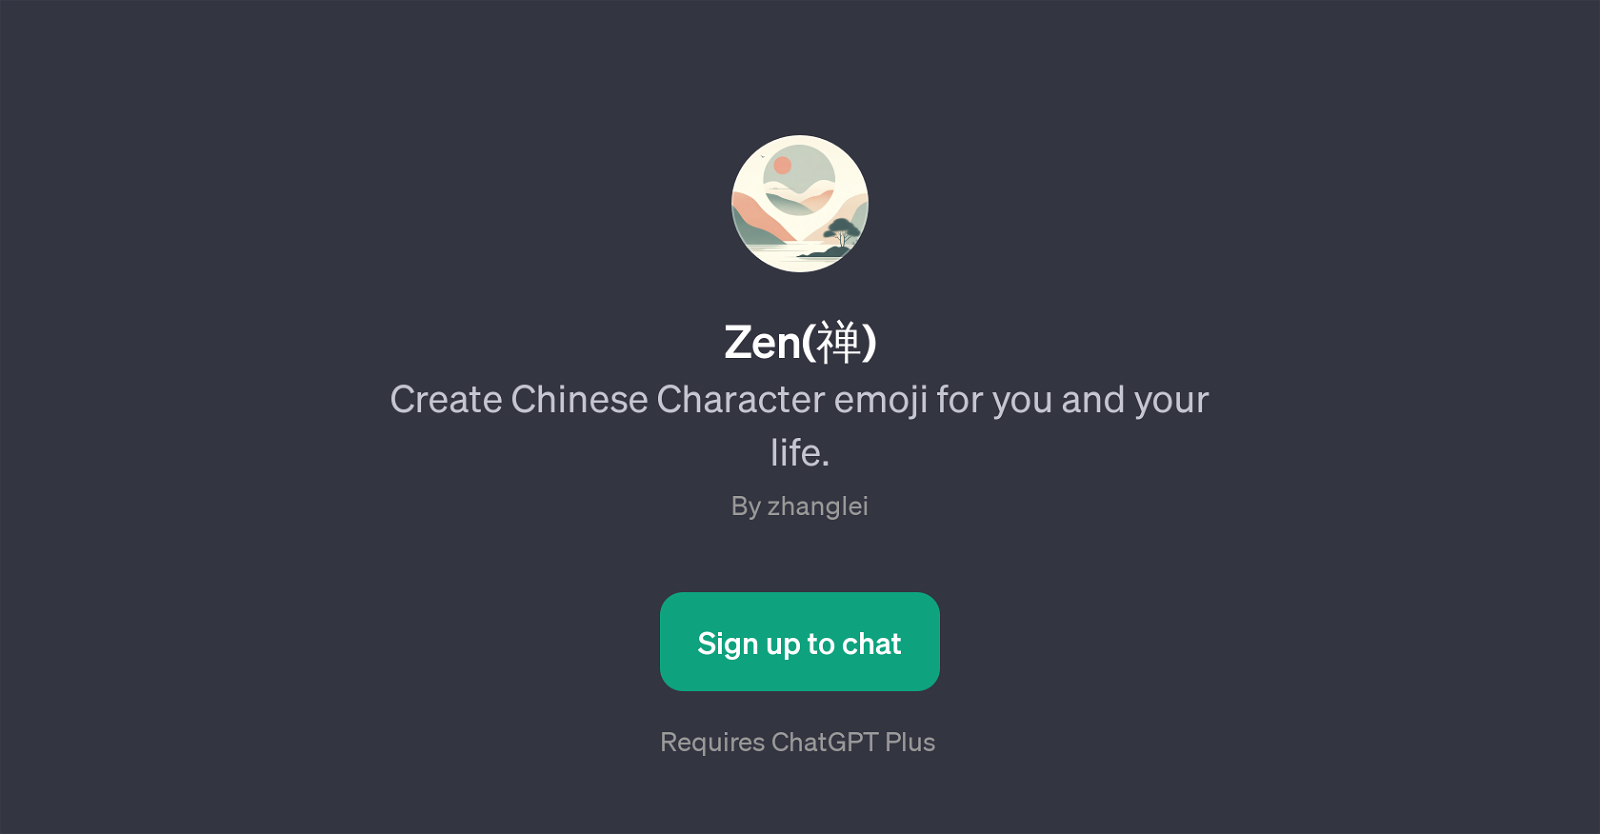 Zen website